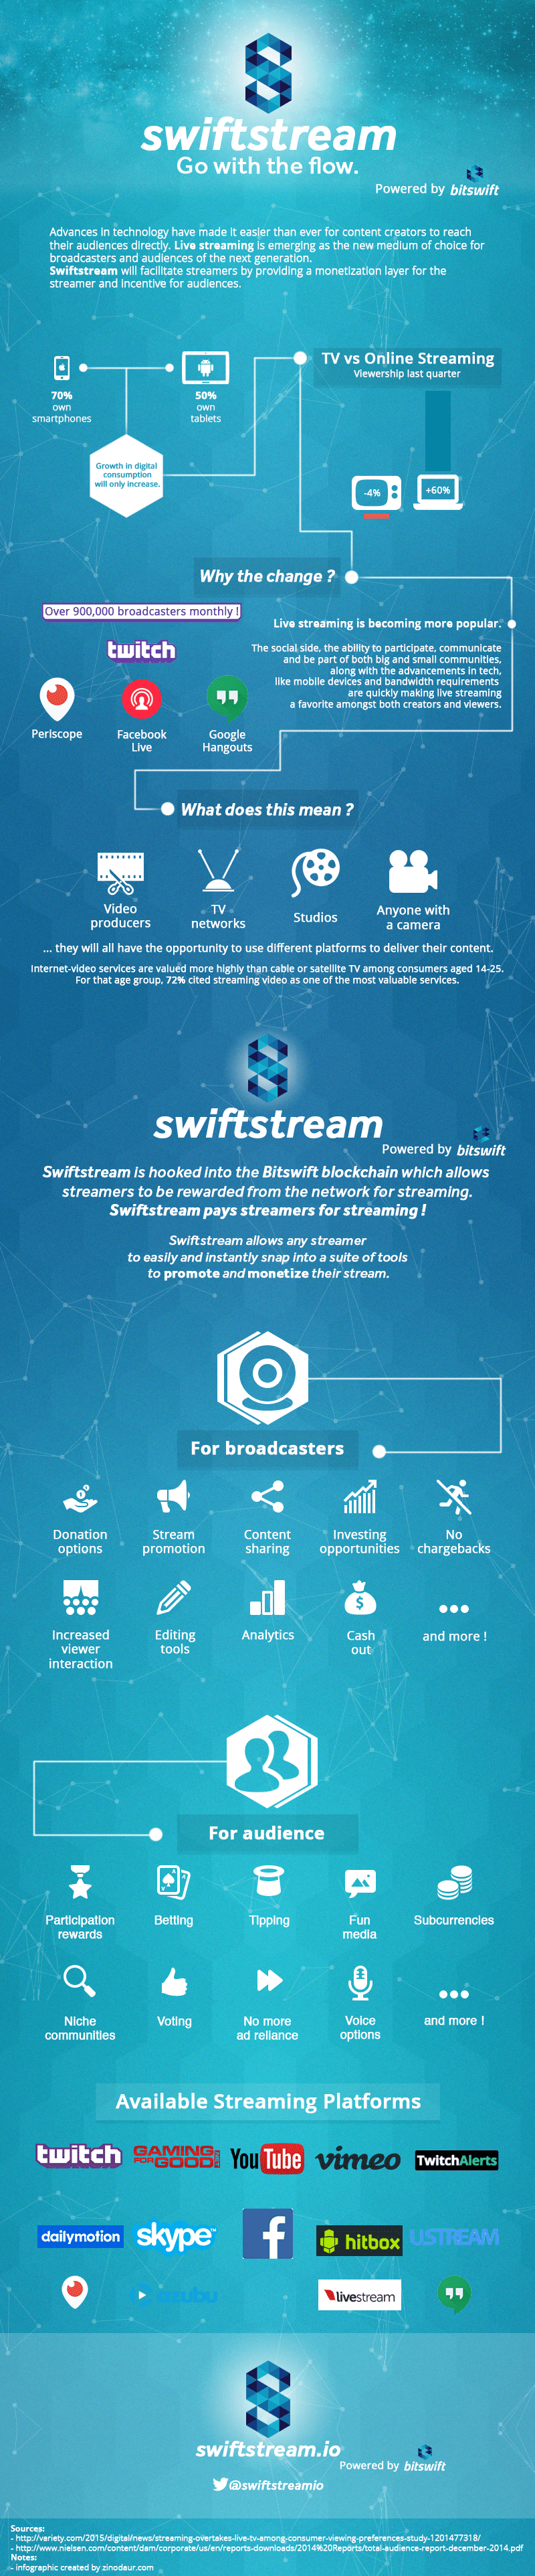 swiftstream infographic